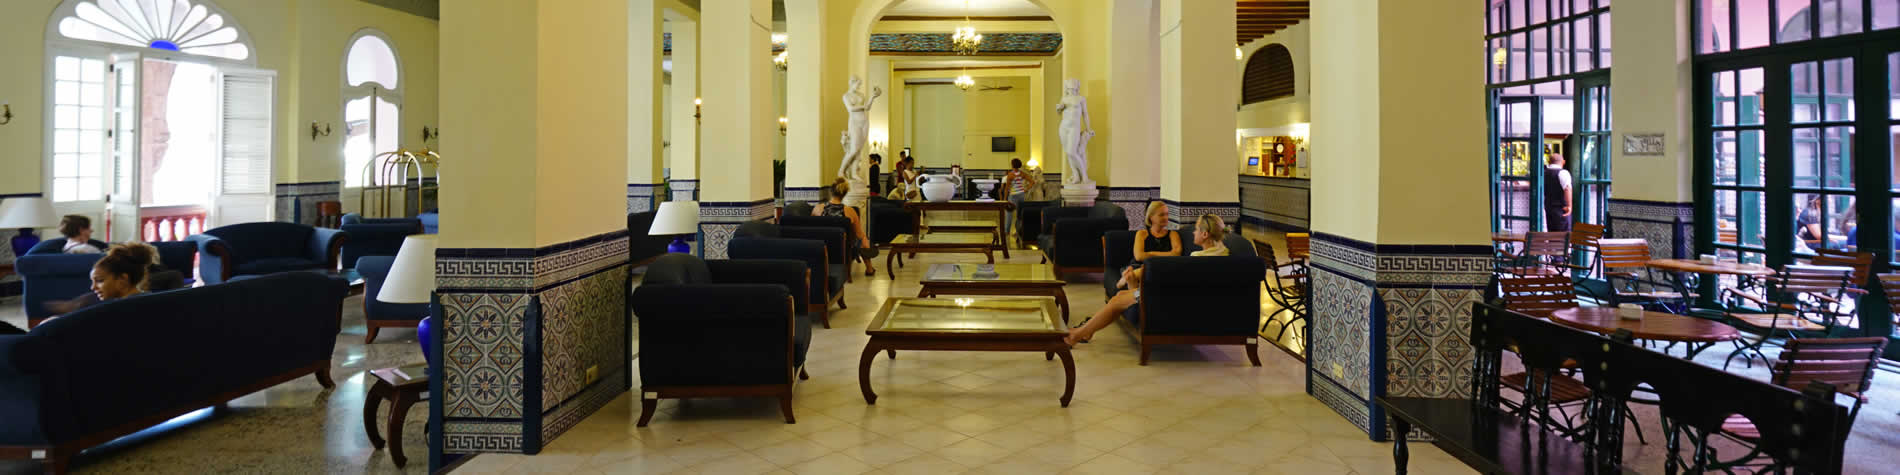 Boutique hotels Cuba